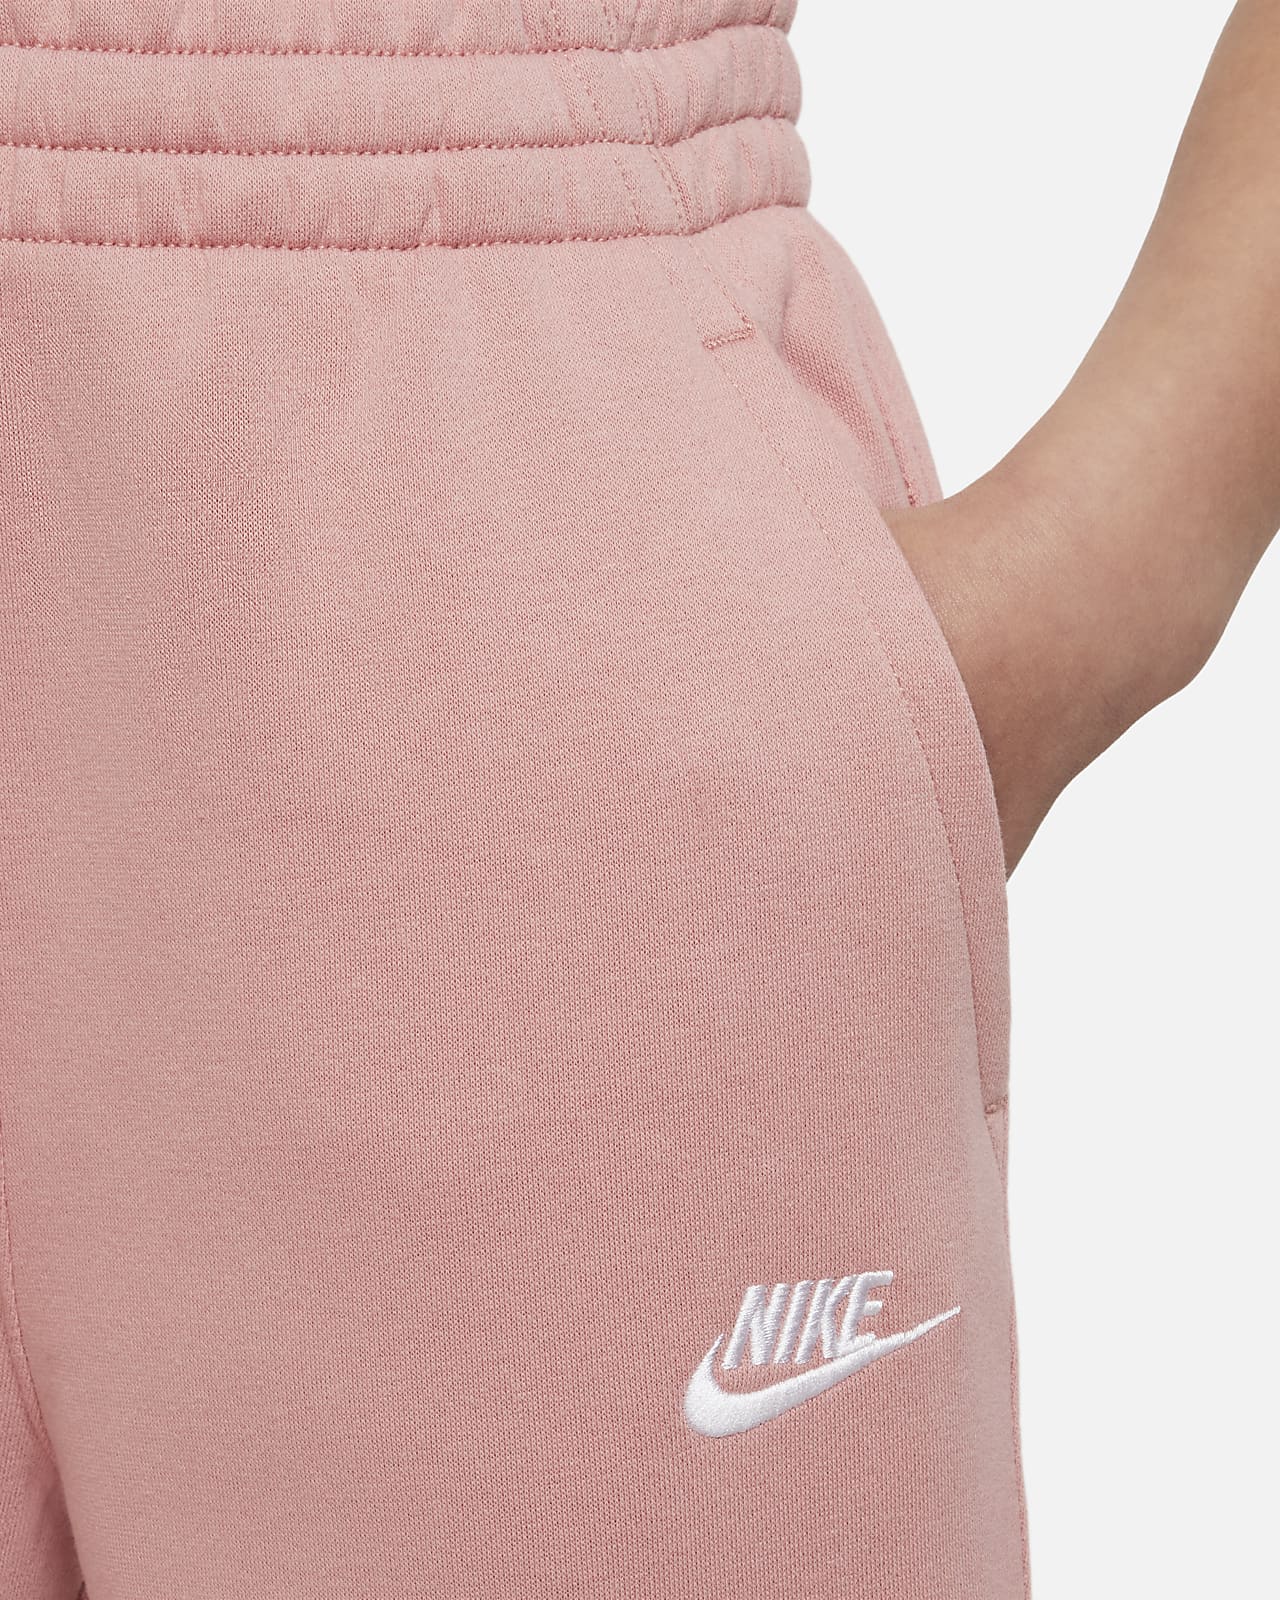 Nike Sportswear girls fleece pants trousers Train happenings  Streeetwearhose 886061171763  eBay